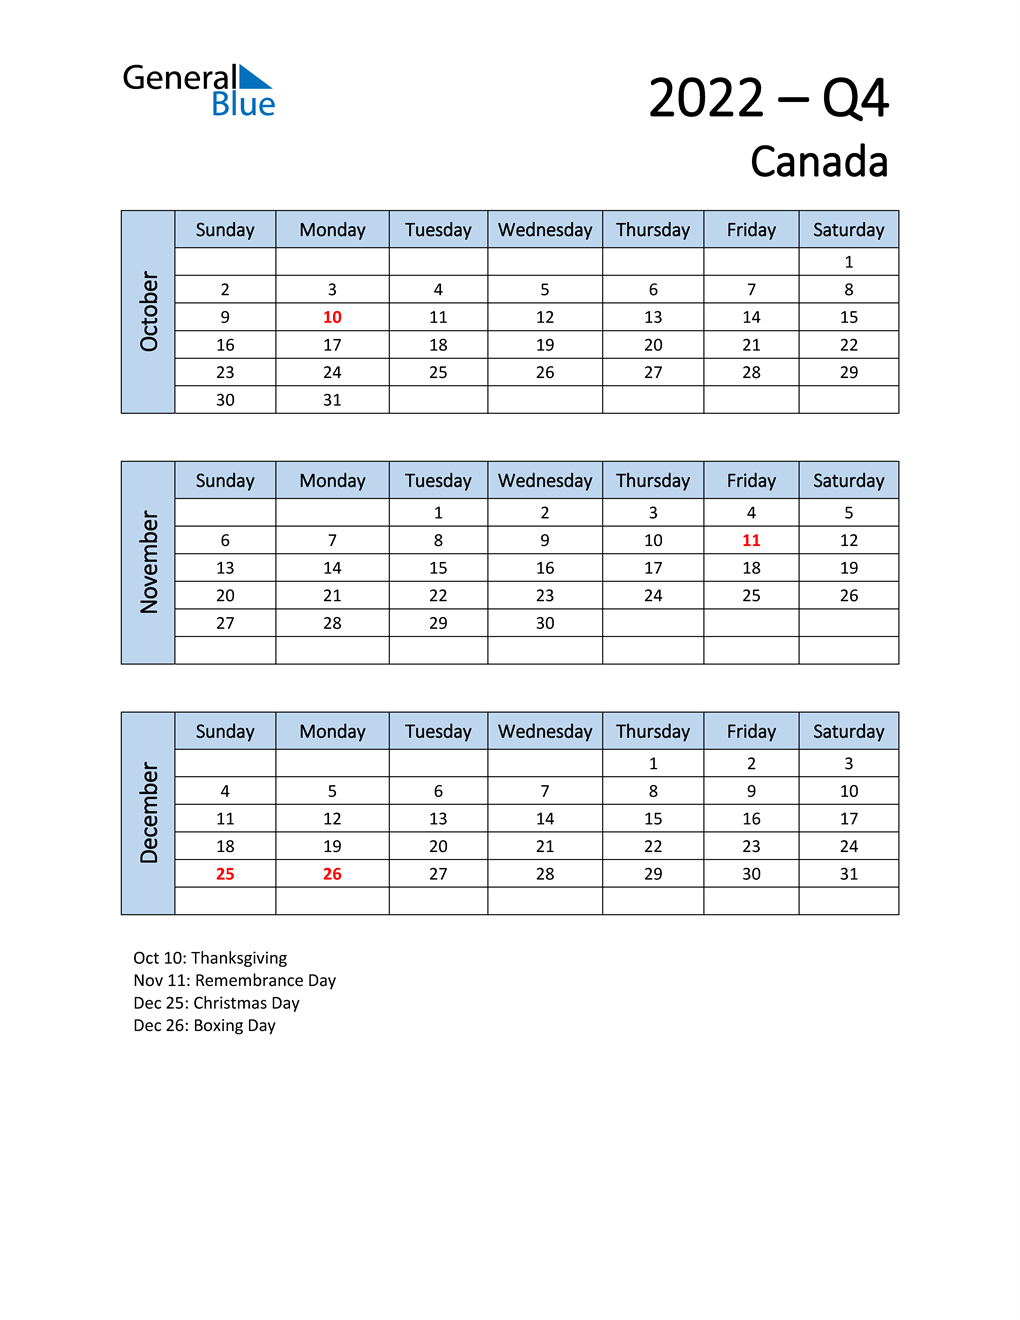  Free Q4 2022 Calendar for Canada